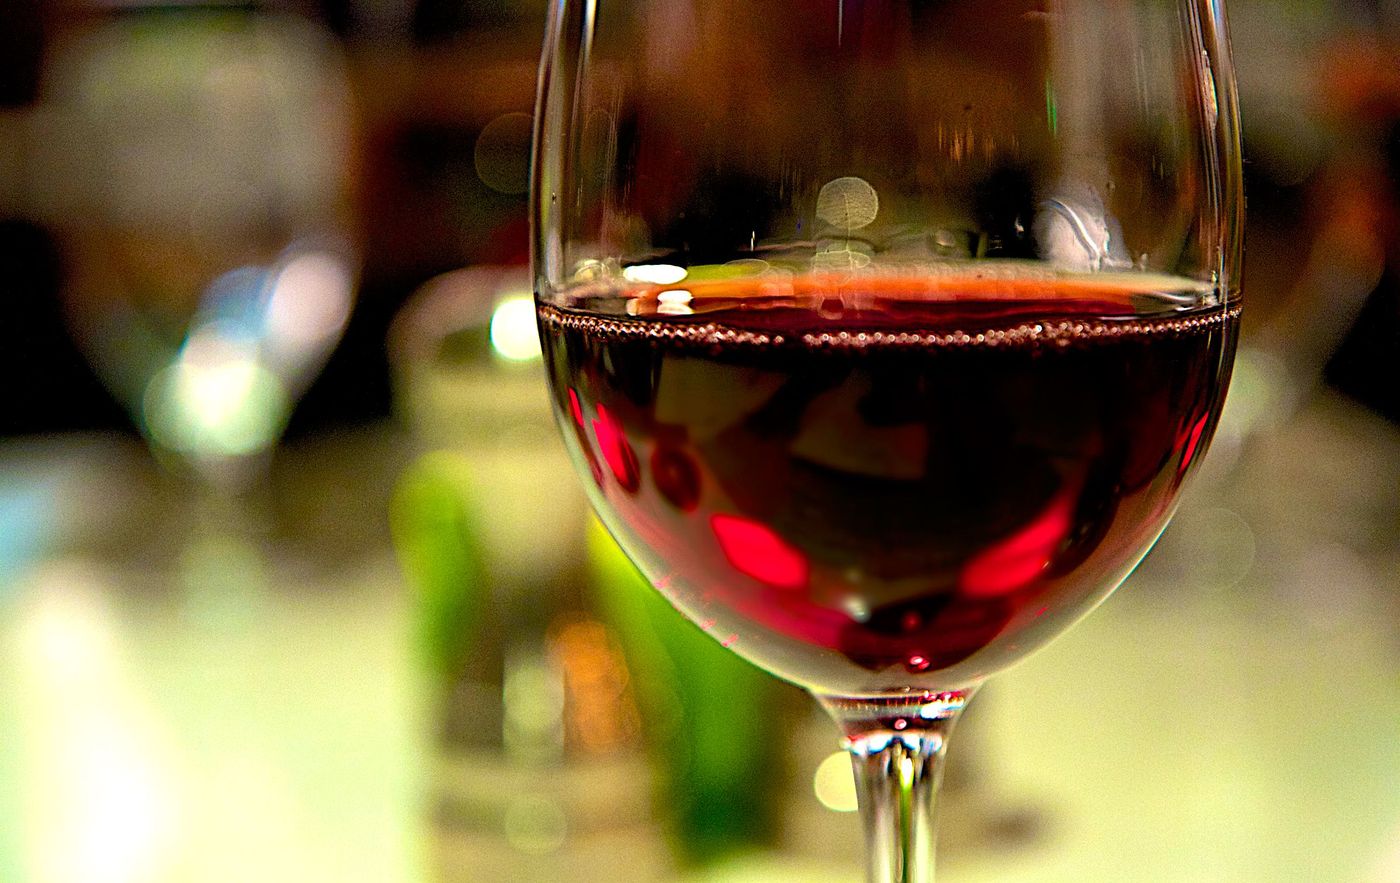 Beți vin, e sănătos și întinerește! Ce este Reservatrolul, ingredientul minune!